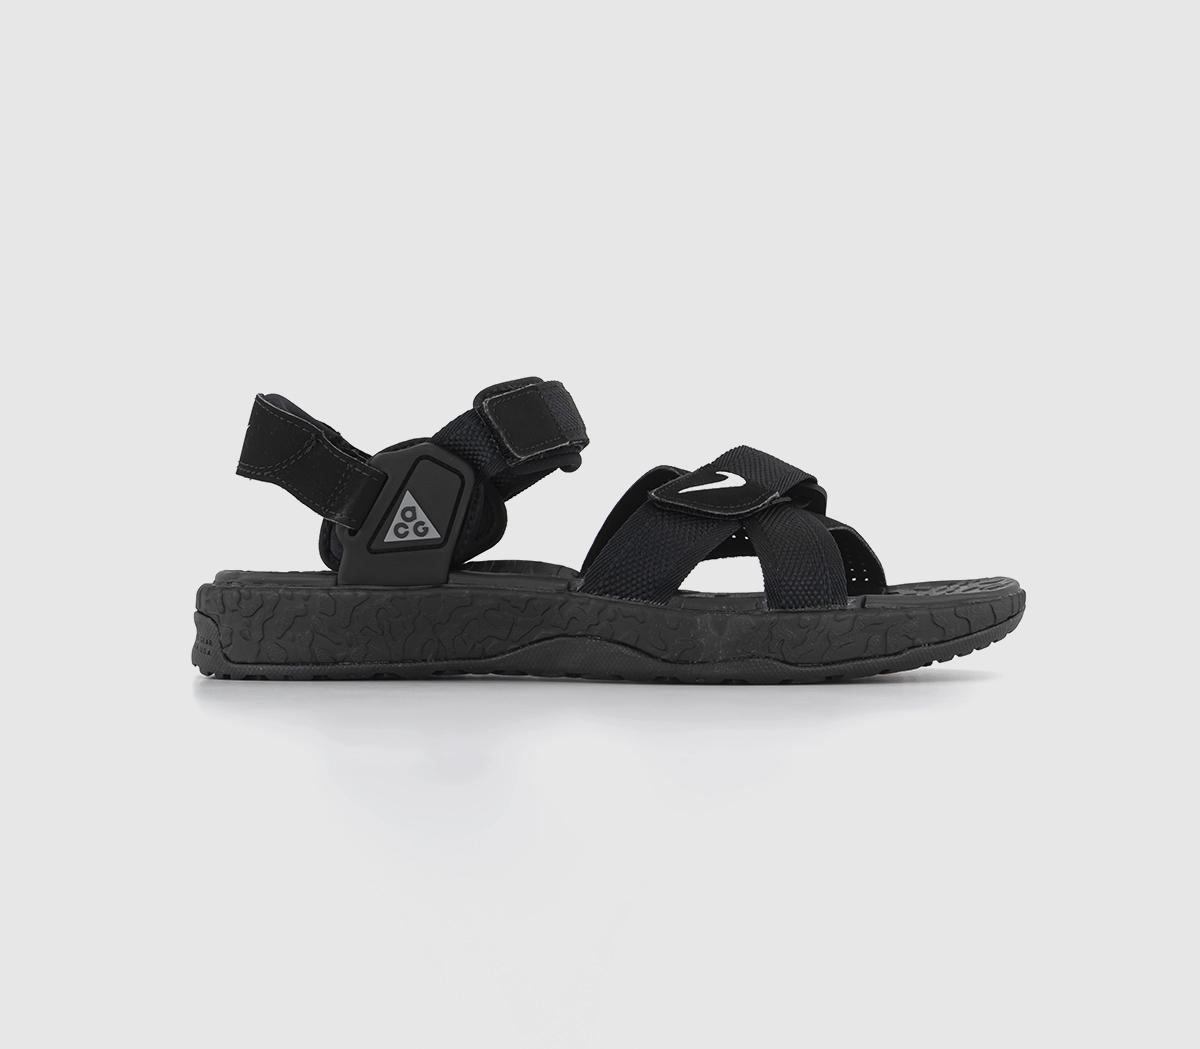 Nike Mens Acg Air Deschutz Sandals Black Grey Fog Black Anthracite Dark Grey, 7